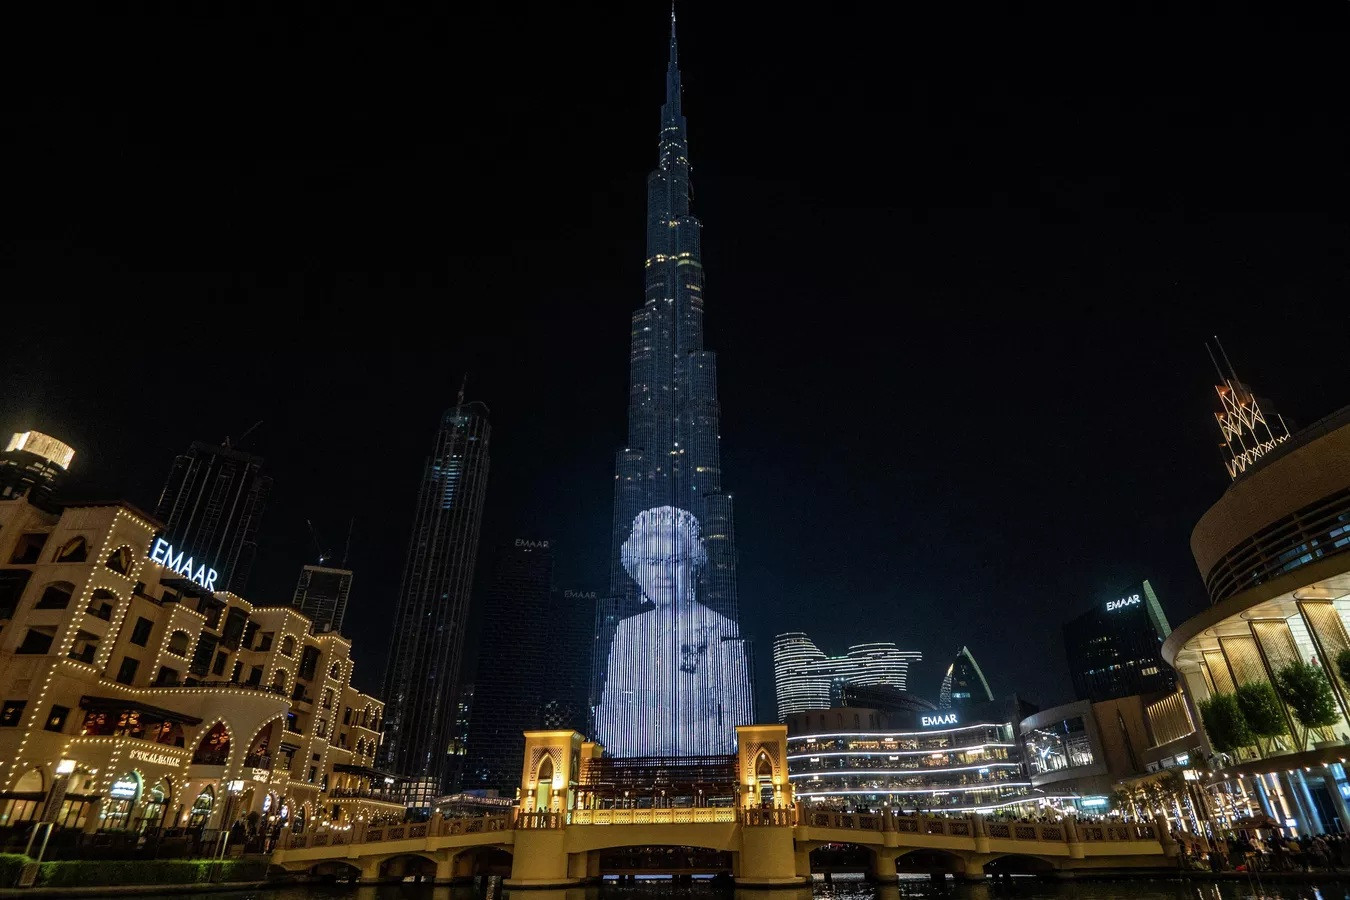 Chân dung Nữ hoàng Anh Elizabeth II được chiếu lên tòa nhà cao nhất thế giới Burj Khalifa ở Dubai.